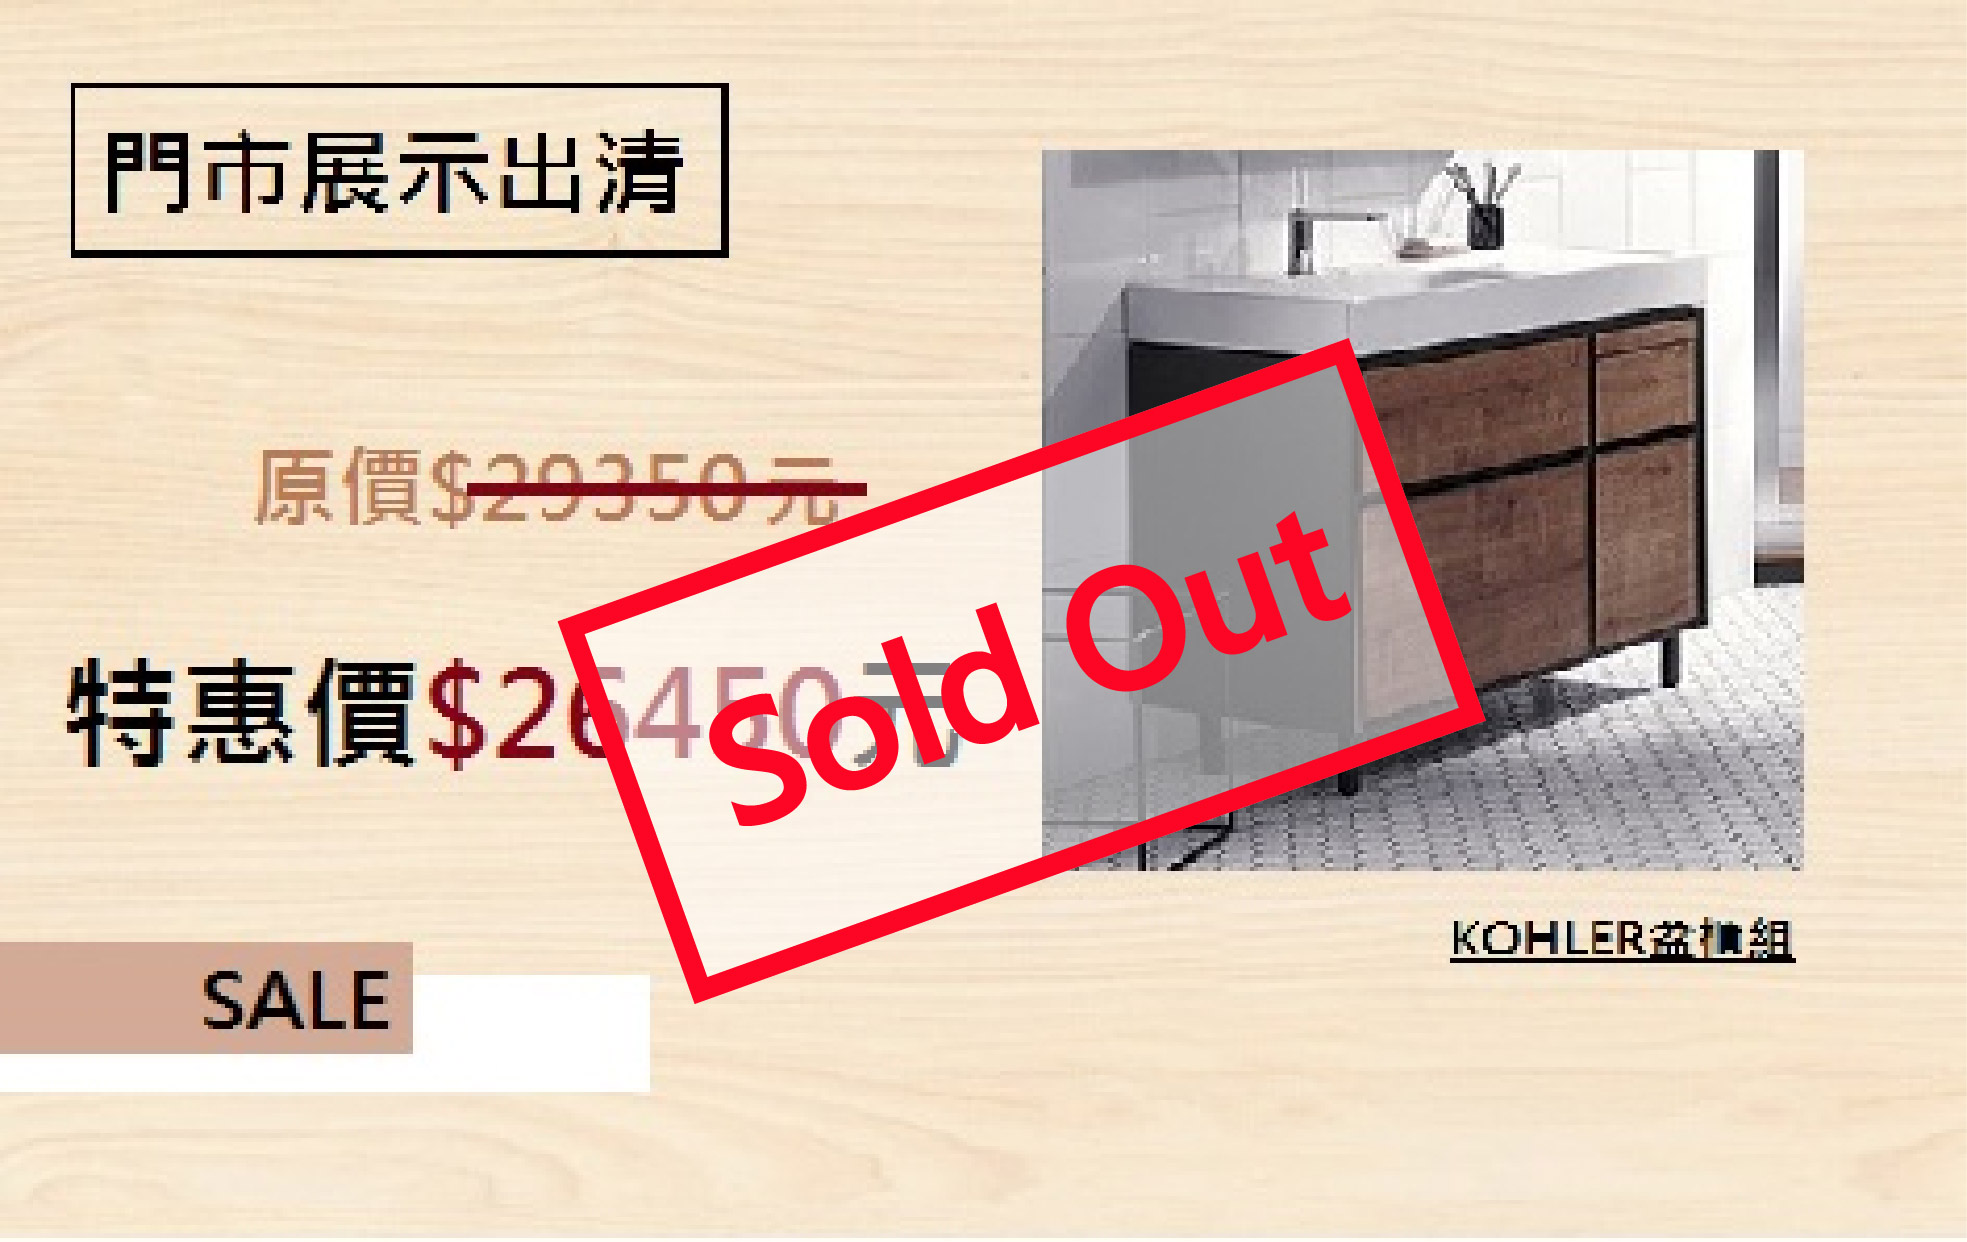 {已售完展示}<br>KOHLER 盆櫃組 - Maxispace(90cm)<br>(本產品僅為瓷盆+浴櫃，不包含水龍頭)  |超值組合|鏡櫃.盆櫃特惠方案